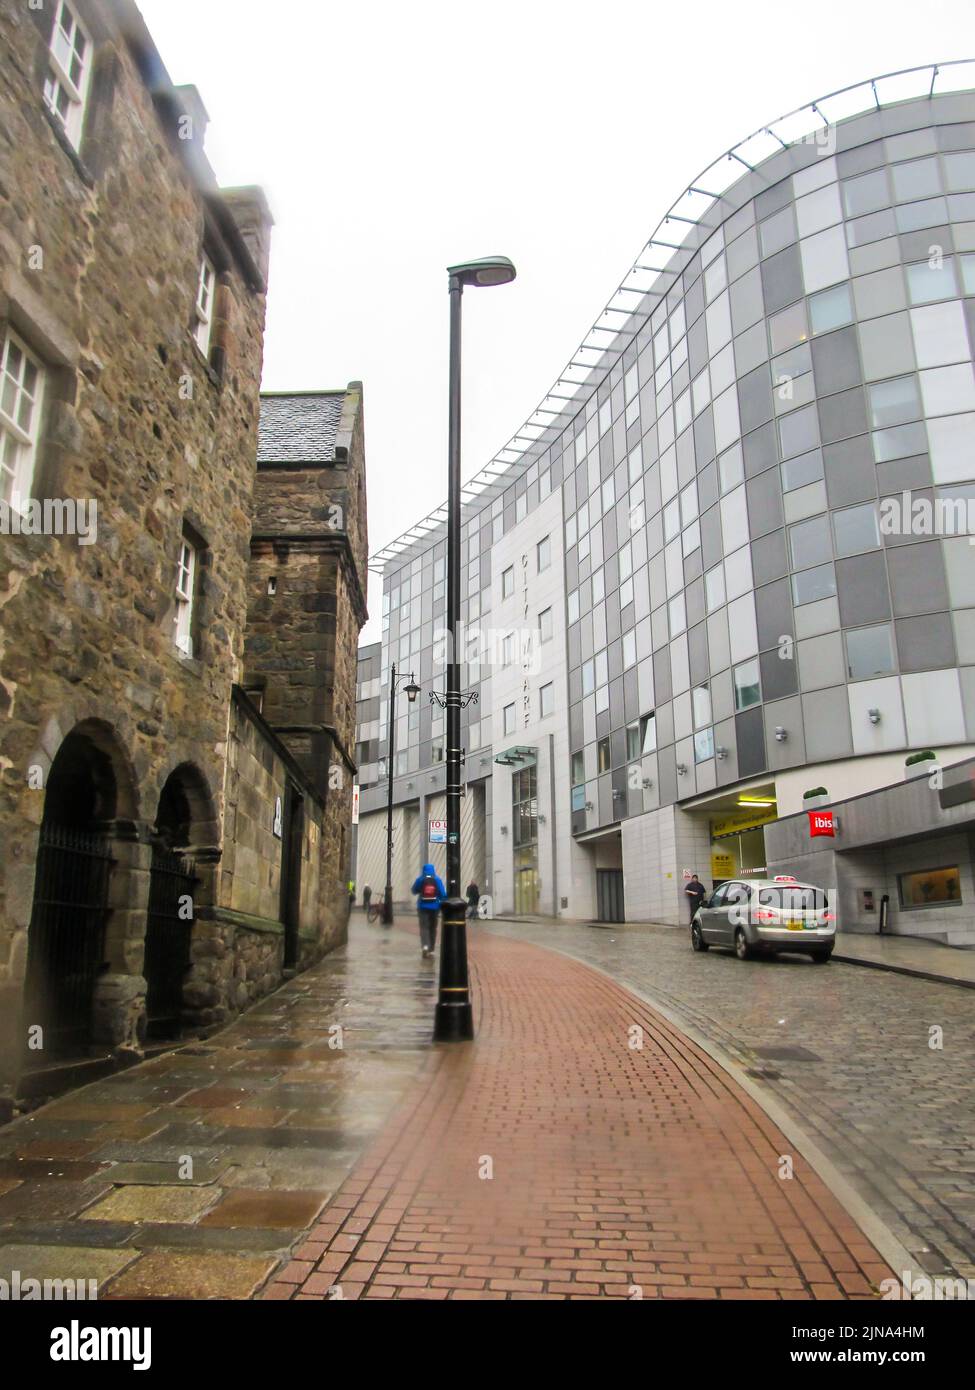 Contrasta con Aberdeen, con vistas a una calle de la ciudad, con un antiguo edificio de piedra por un lado y un moderno edificio de oficinas de cristal por el otro. Foto de stock